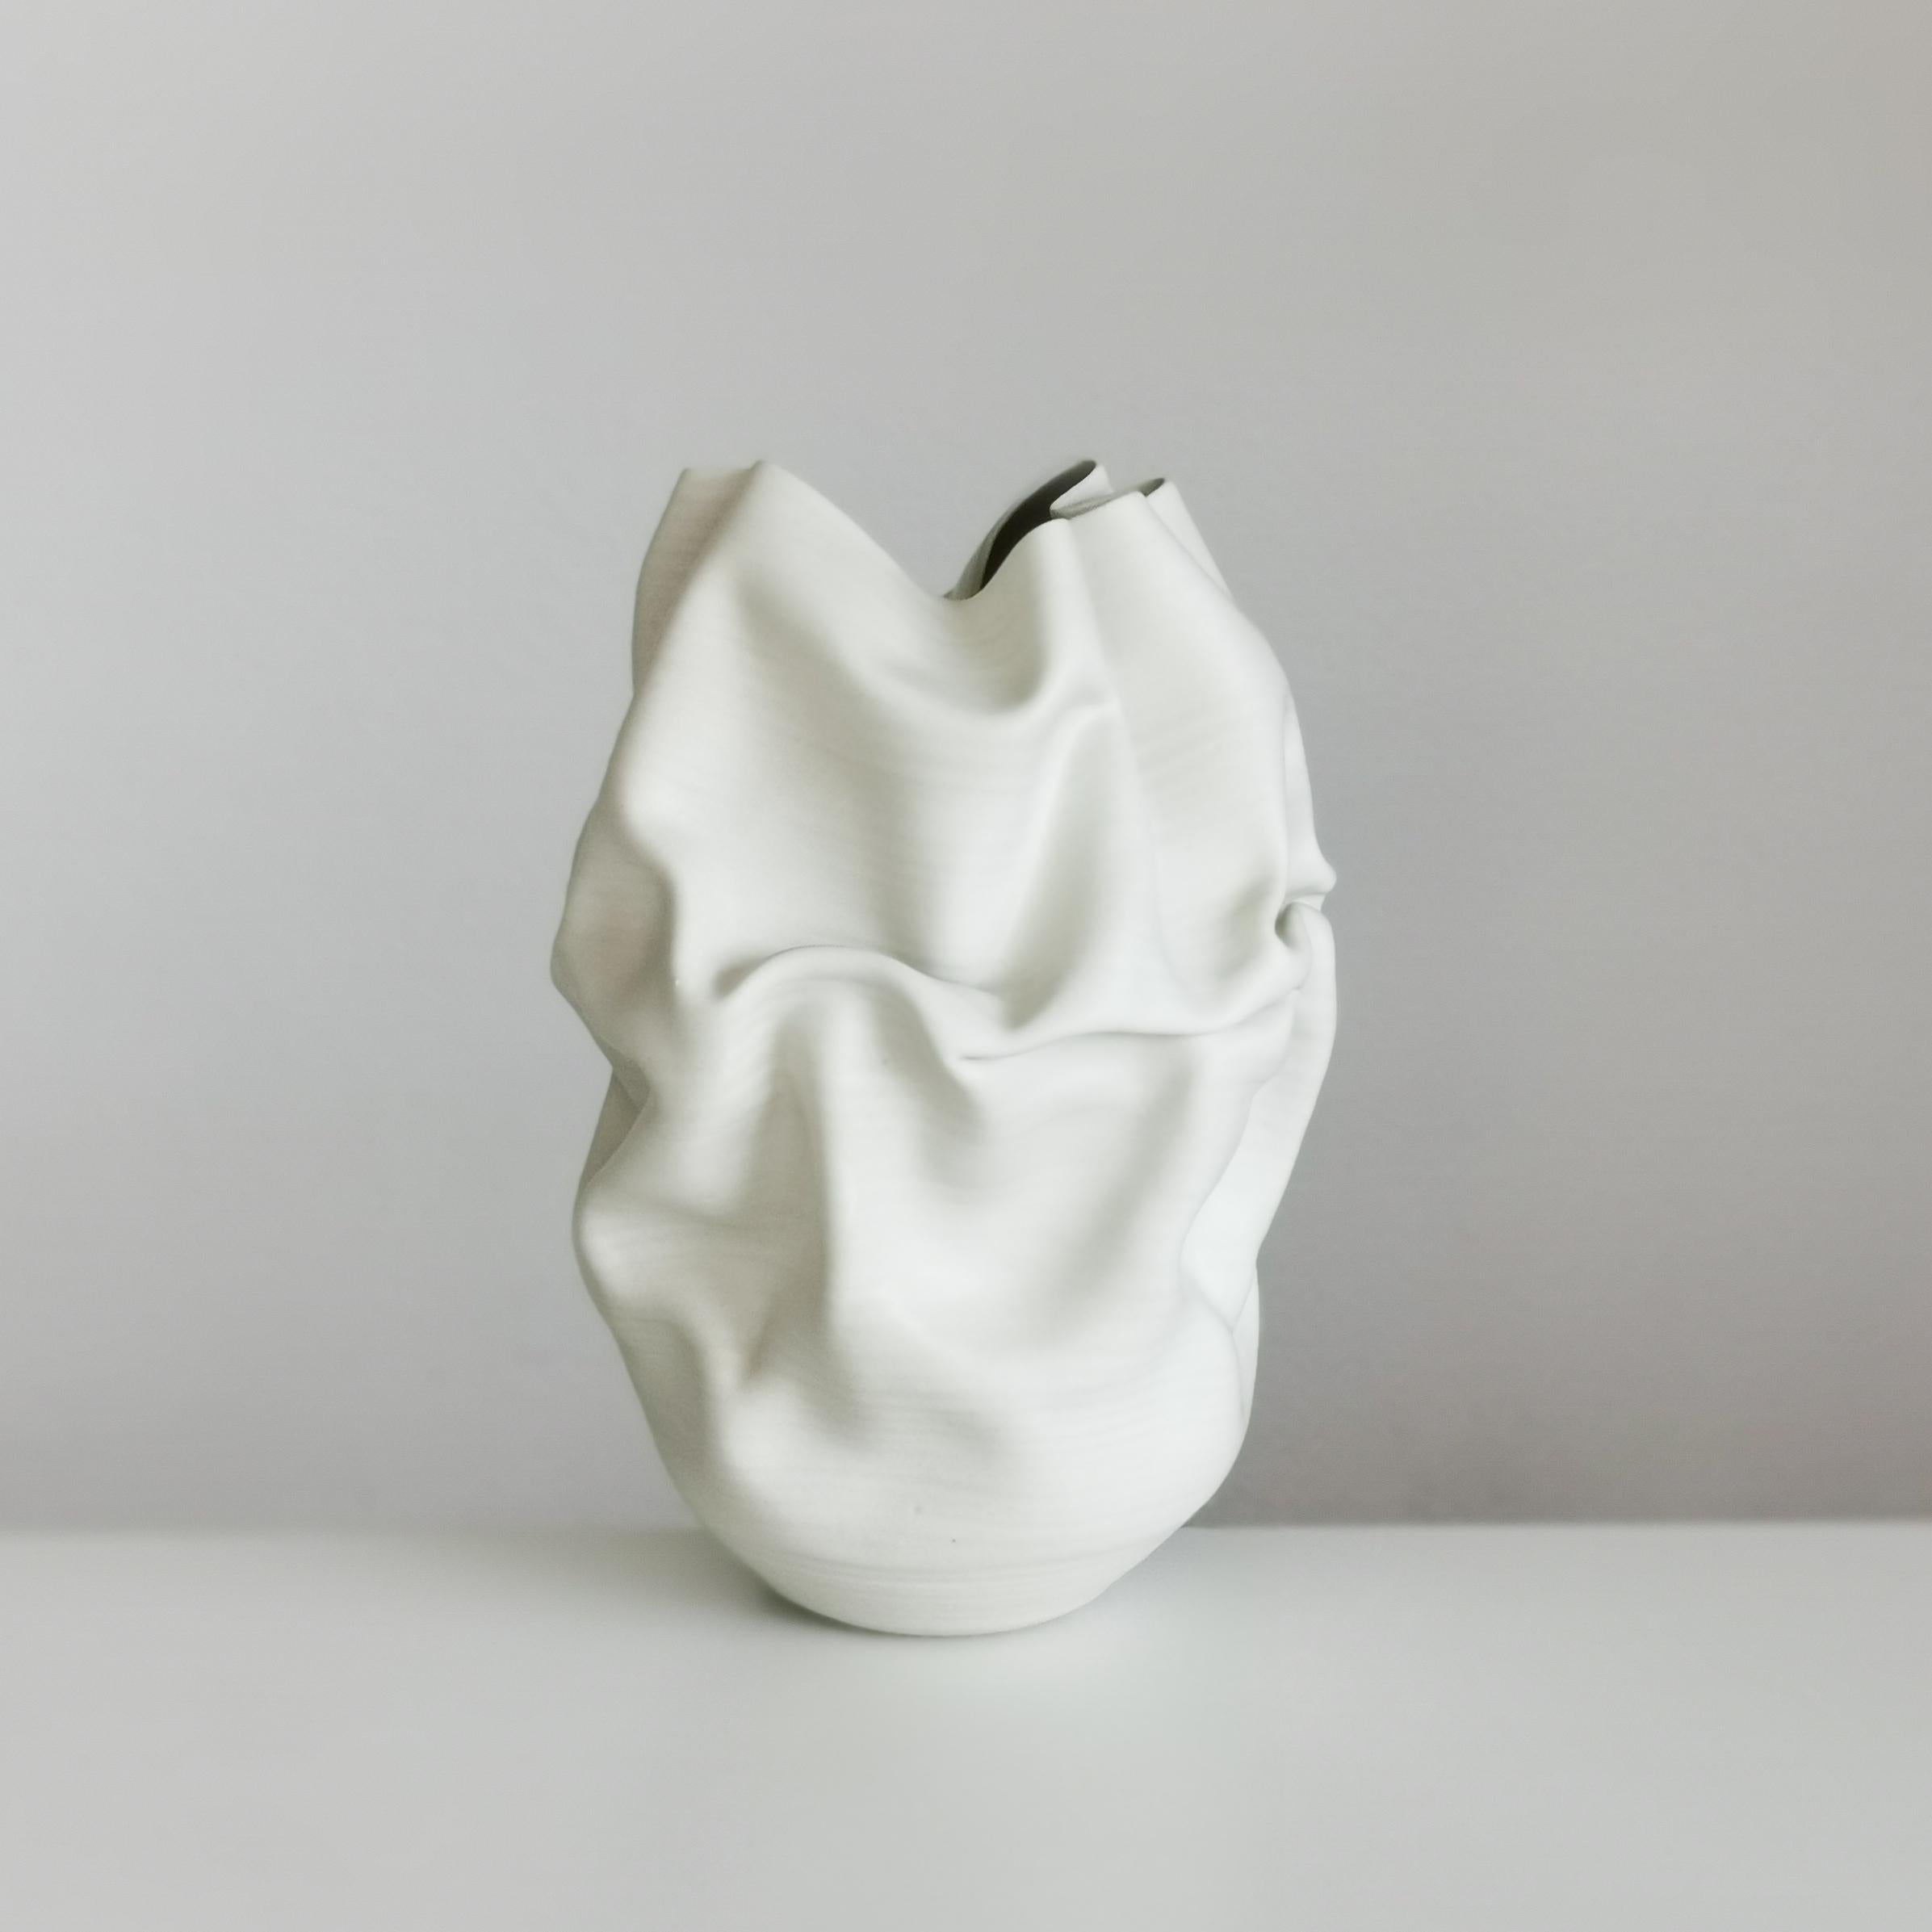 Spanish Medium Tall White Undulating Crumpled Form, Unique Ceramic Sculpture Vessel N.51